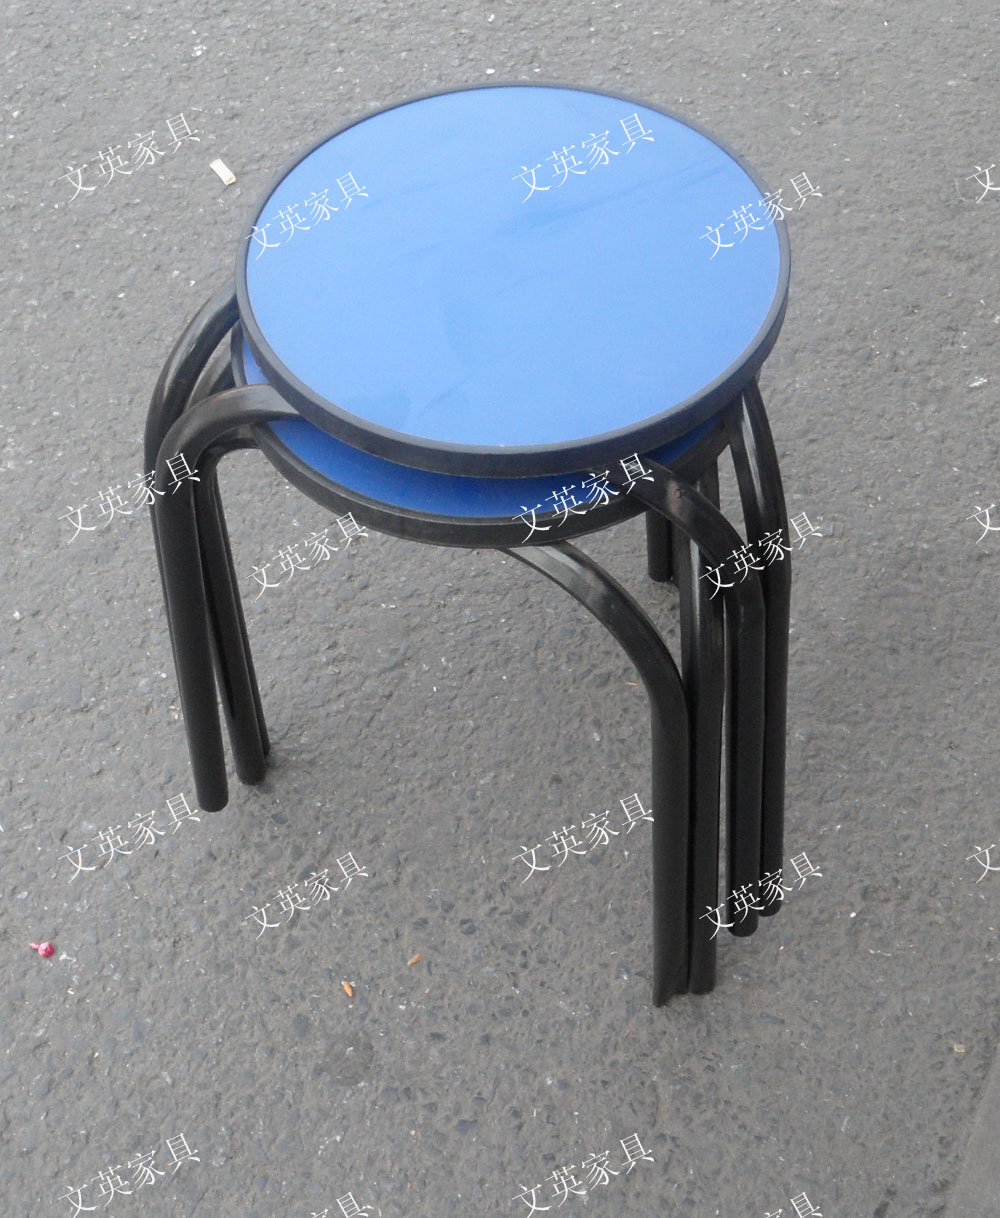 特价凳子 简易凳子 折叠凳子 凳子 实木凳子 凳子时尚 圆凳